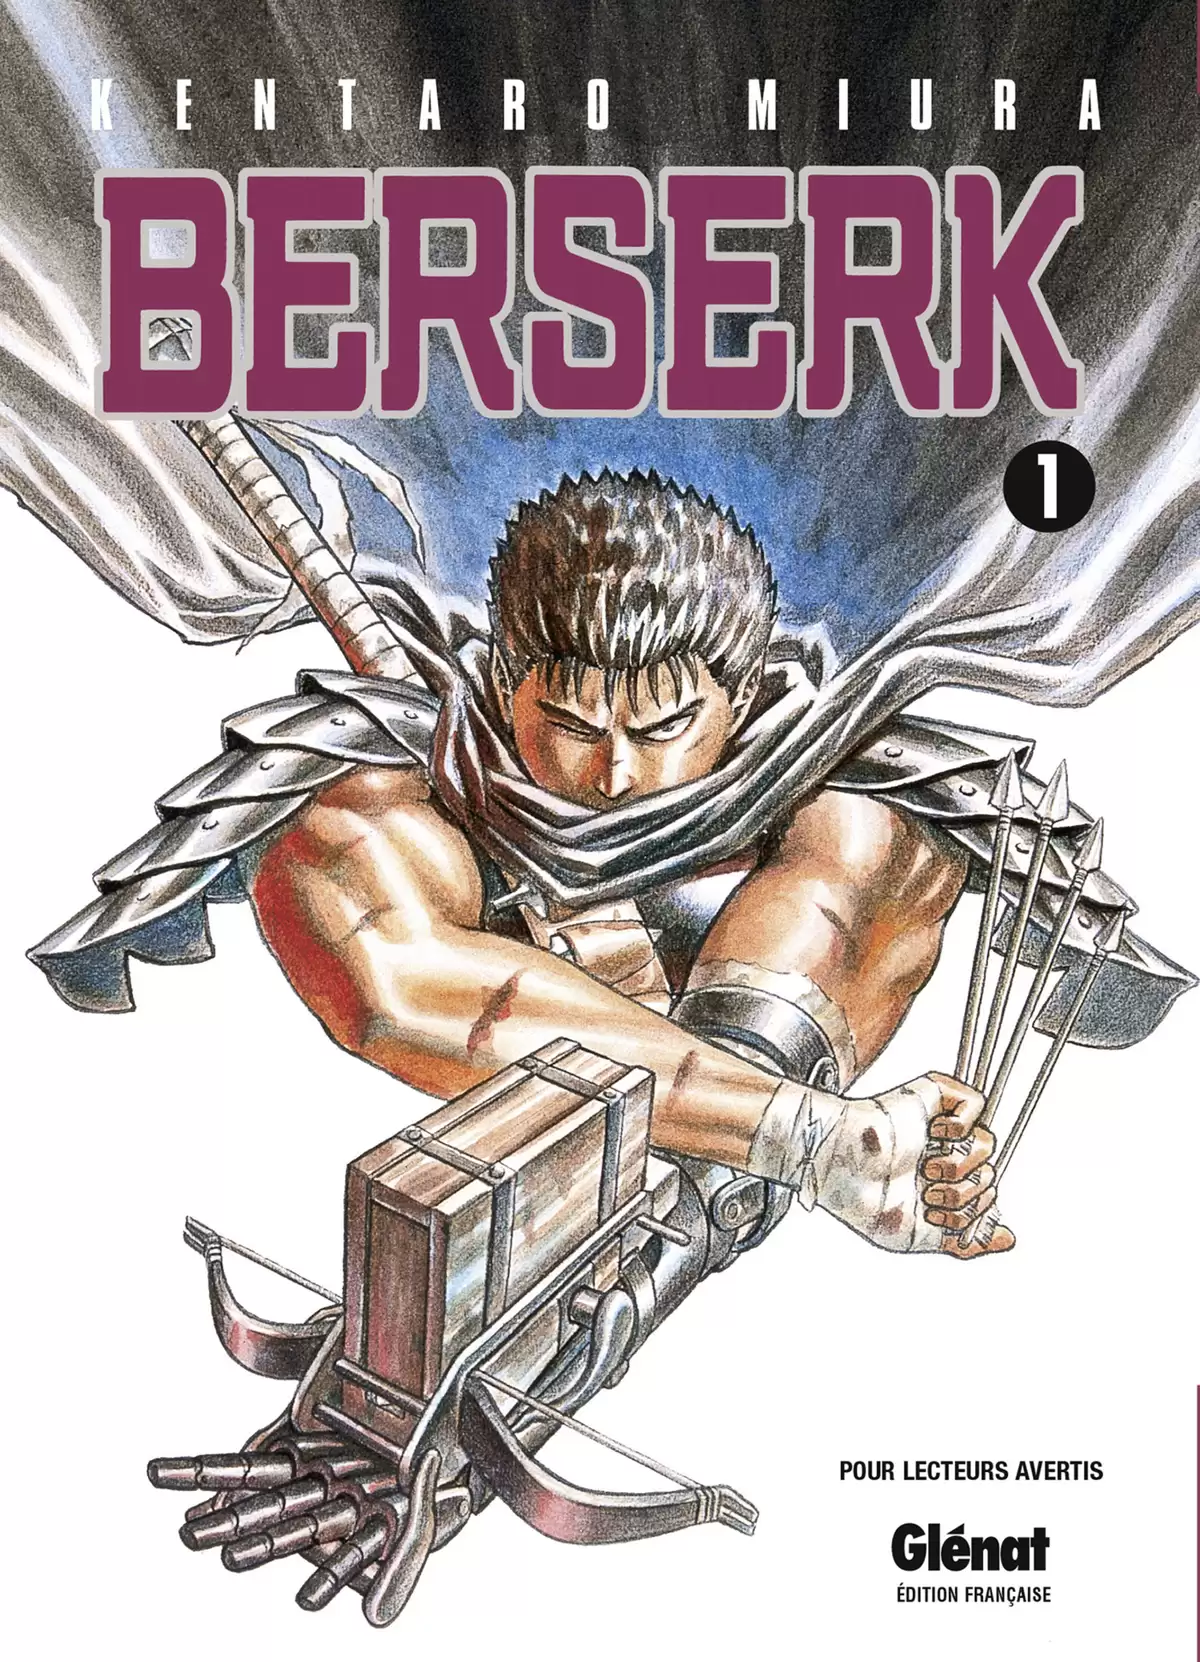 Berserk Volume 1 page 1